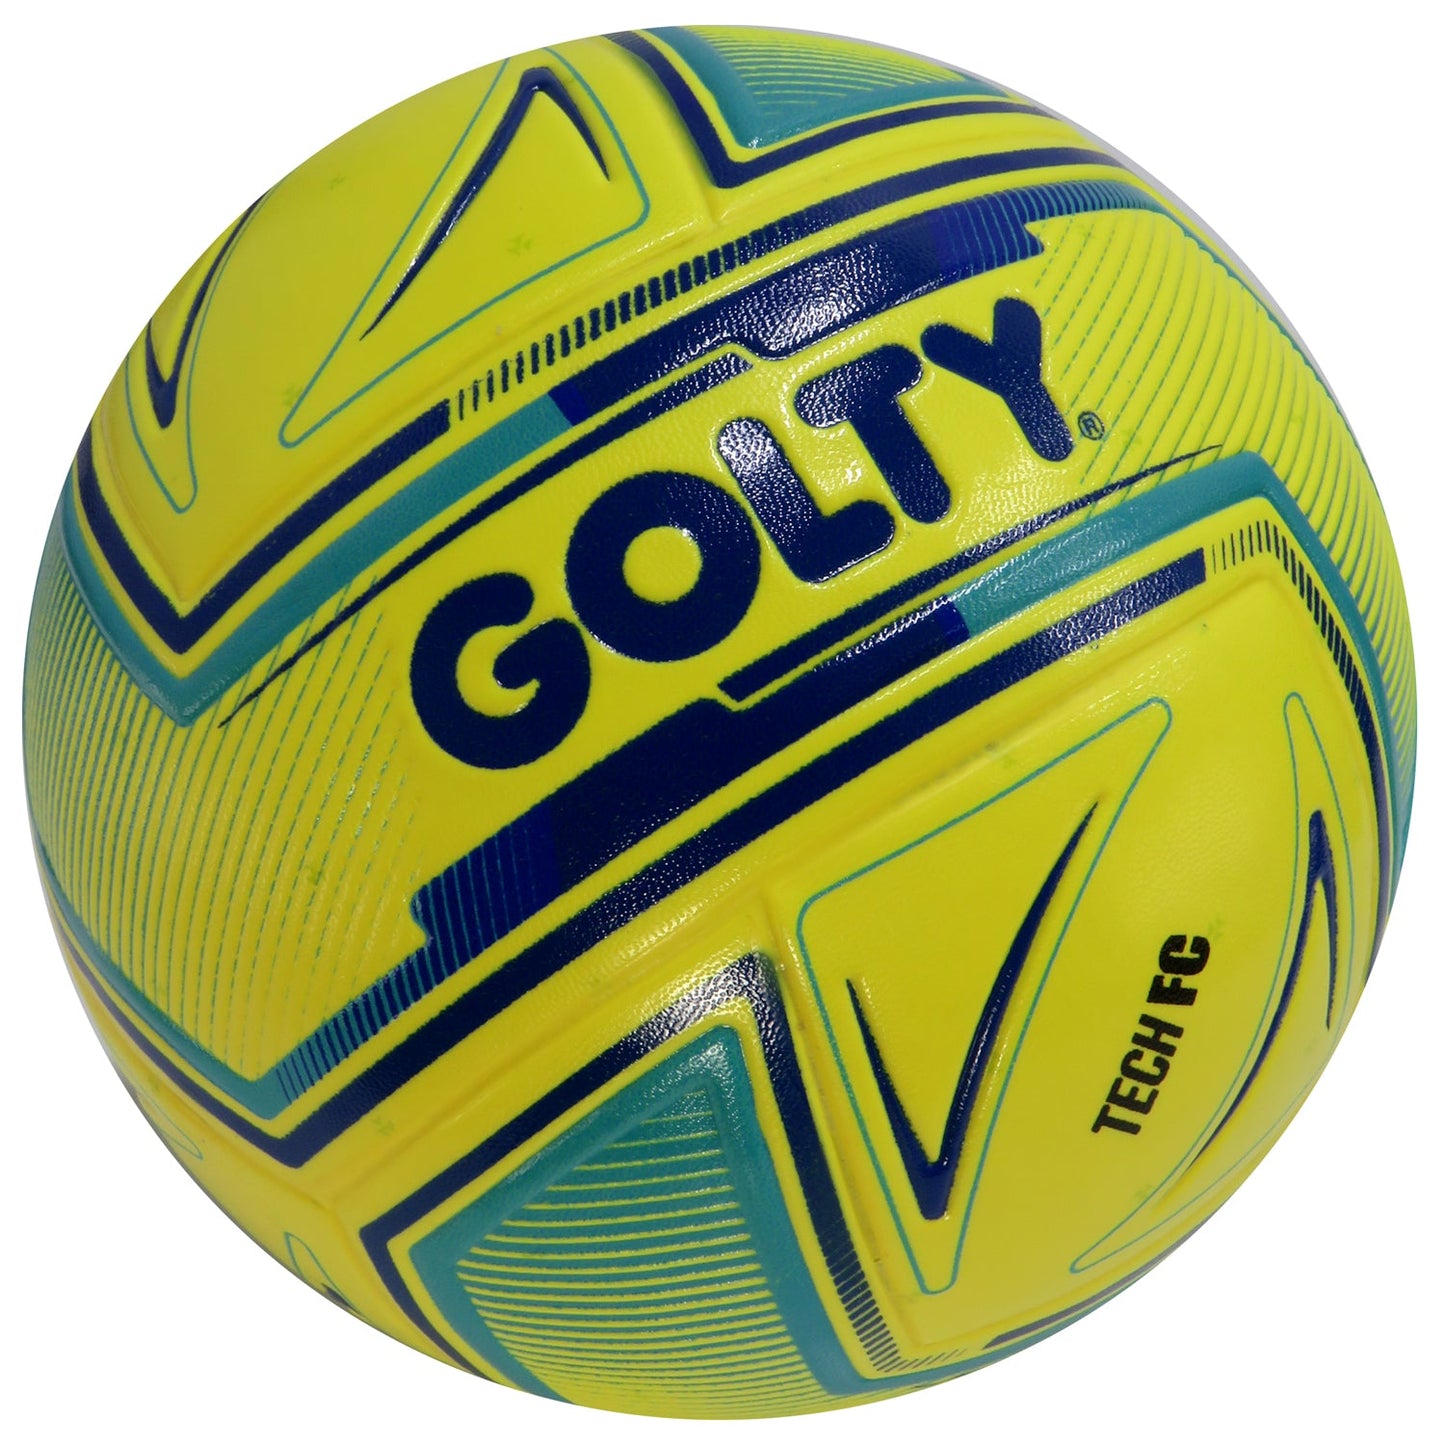 Balon de Fútbol Sala Competencia Laminado Golty Tech